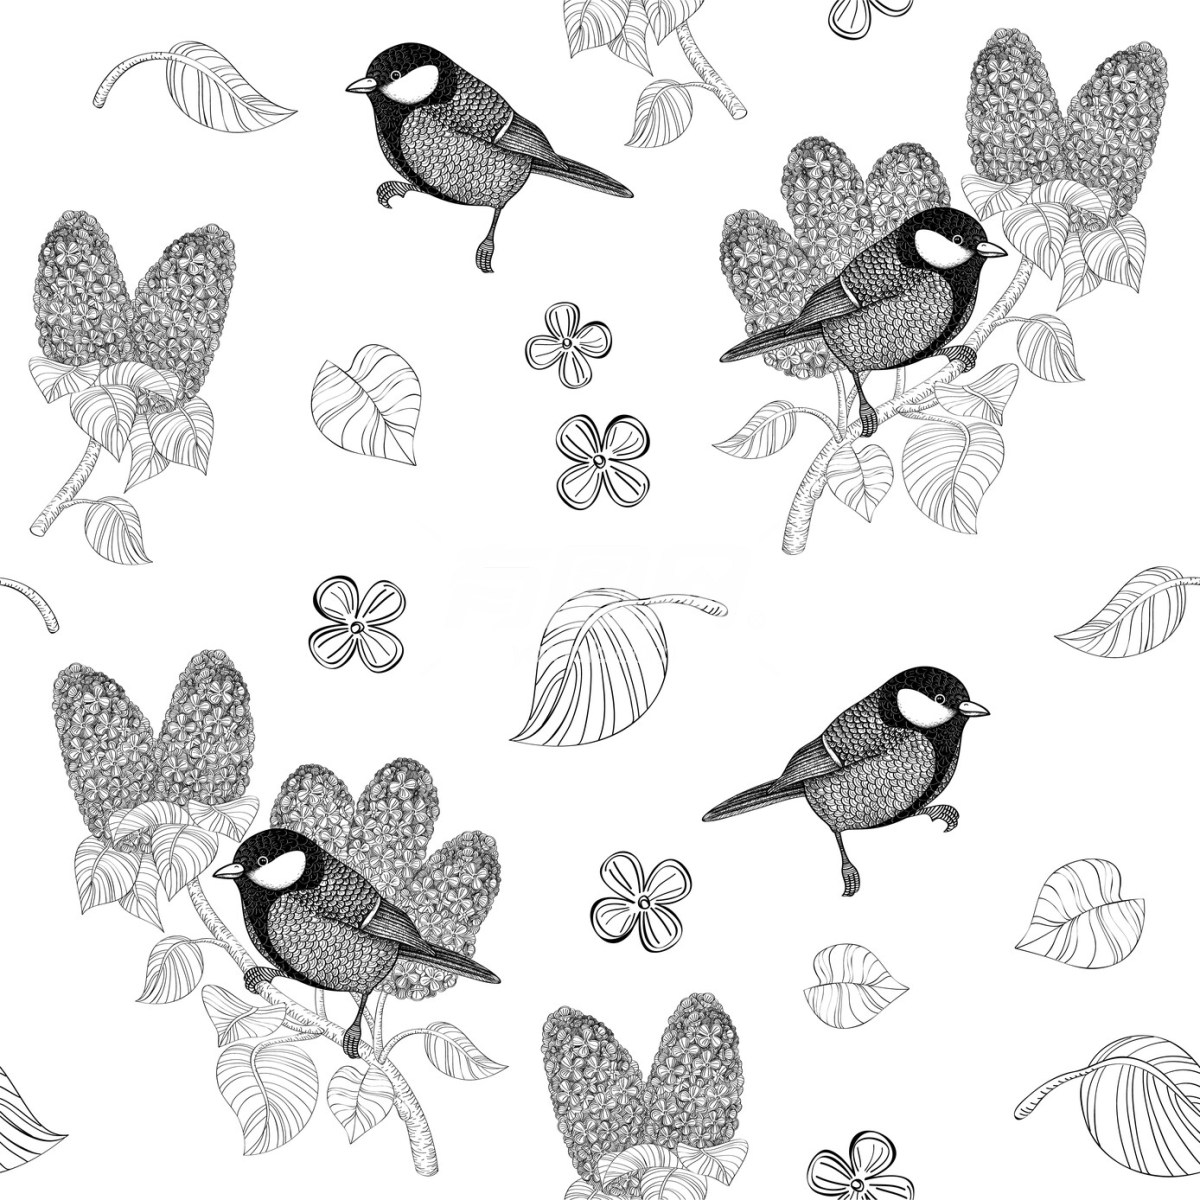 鸟类插画